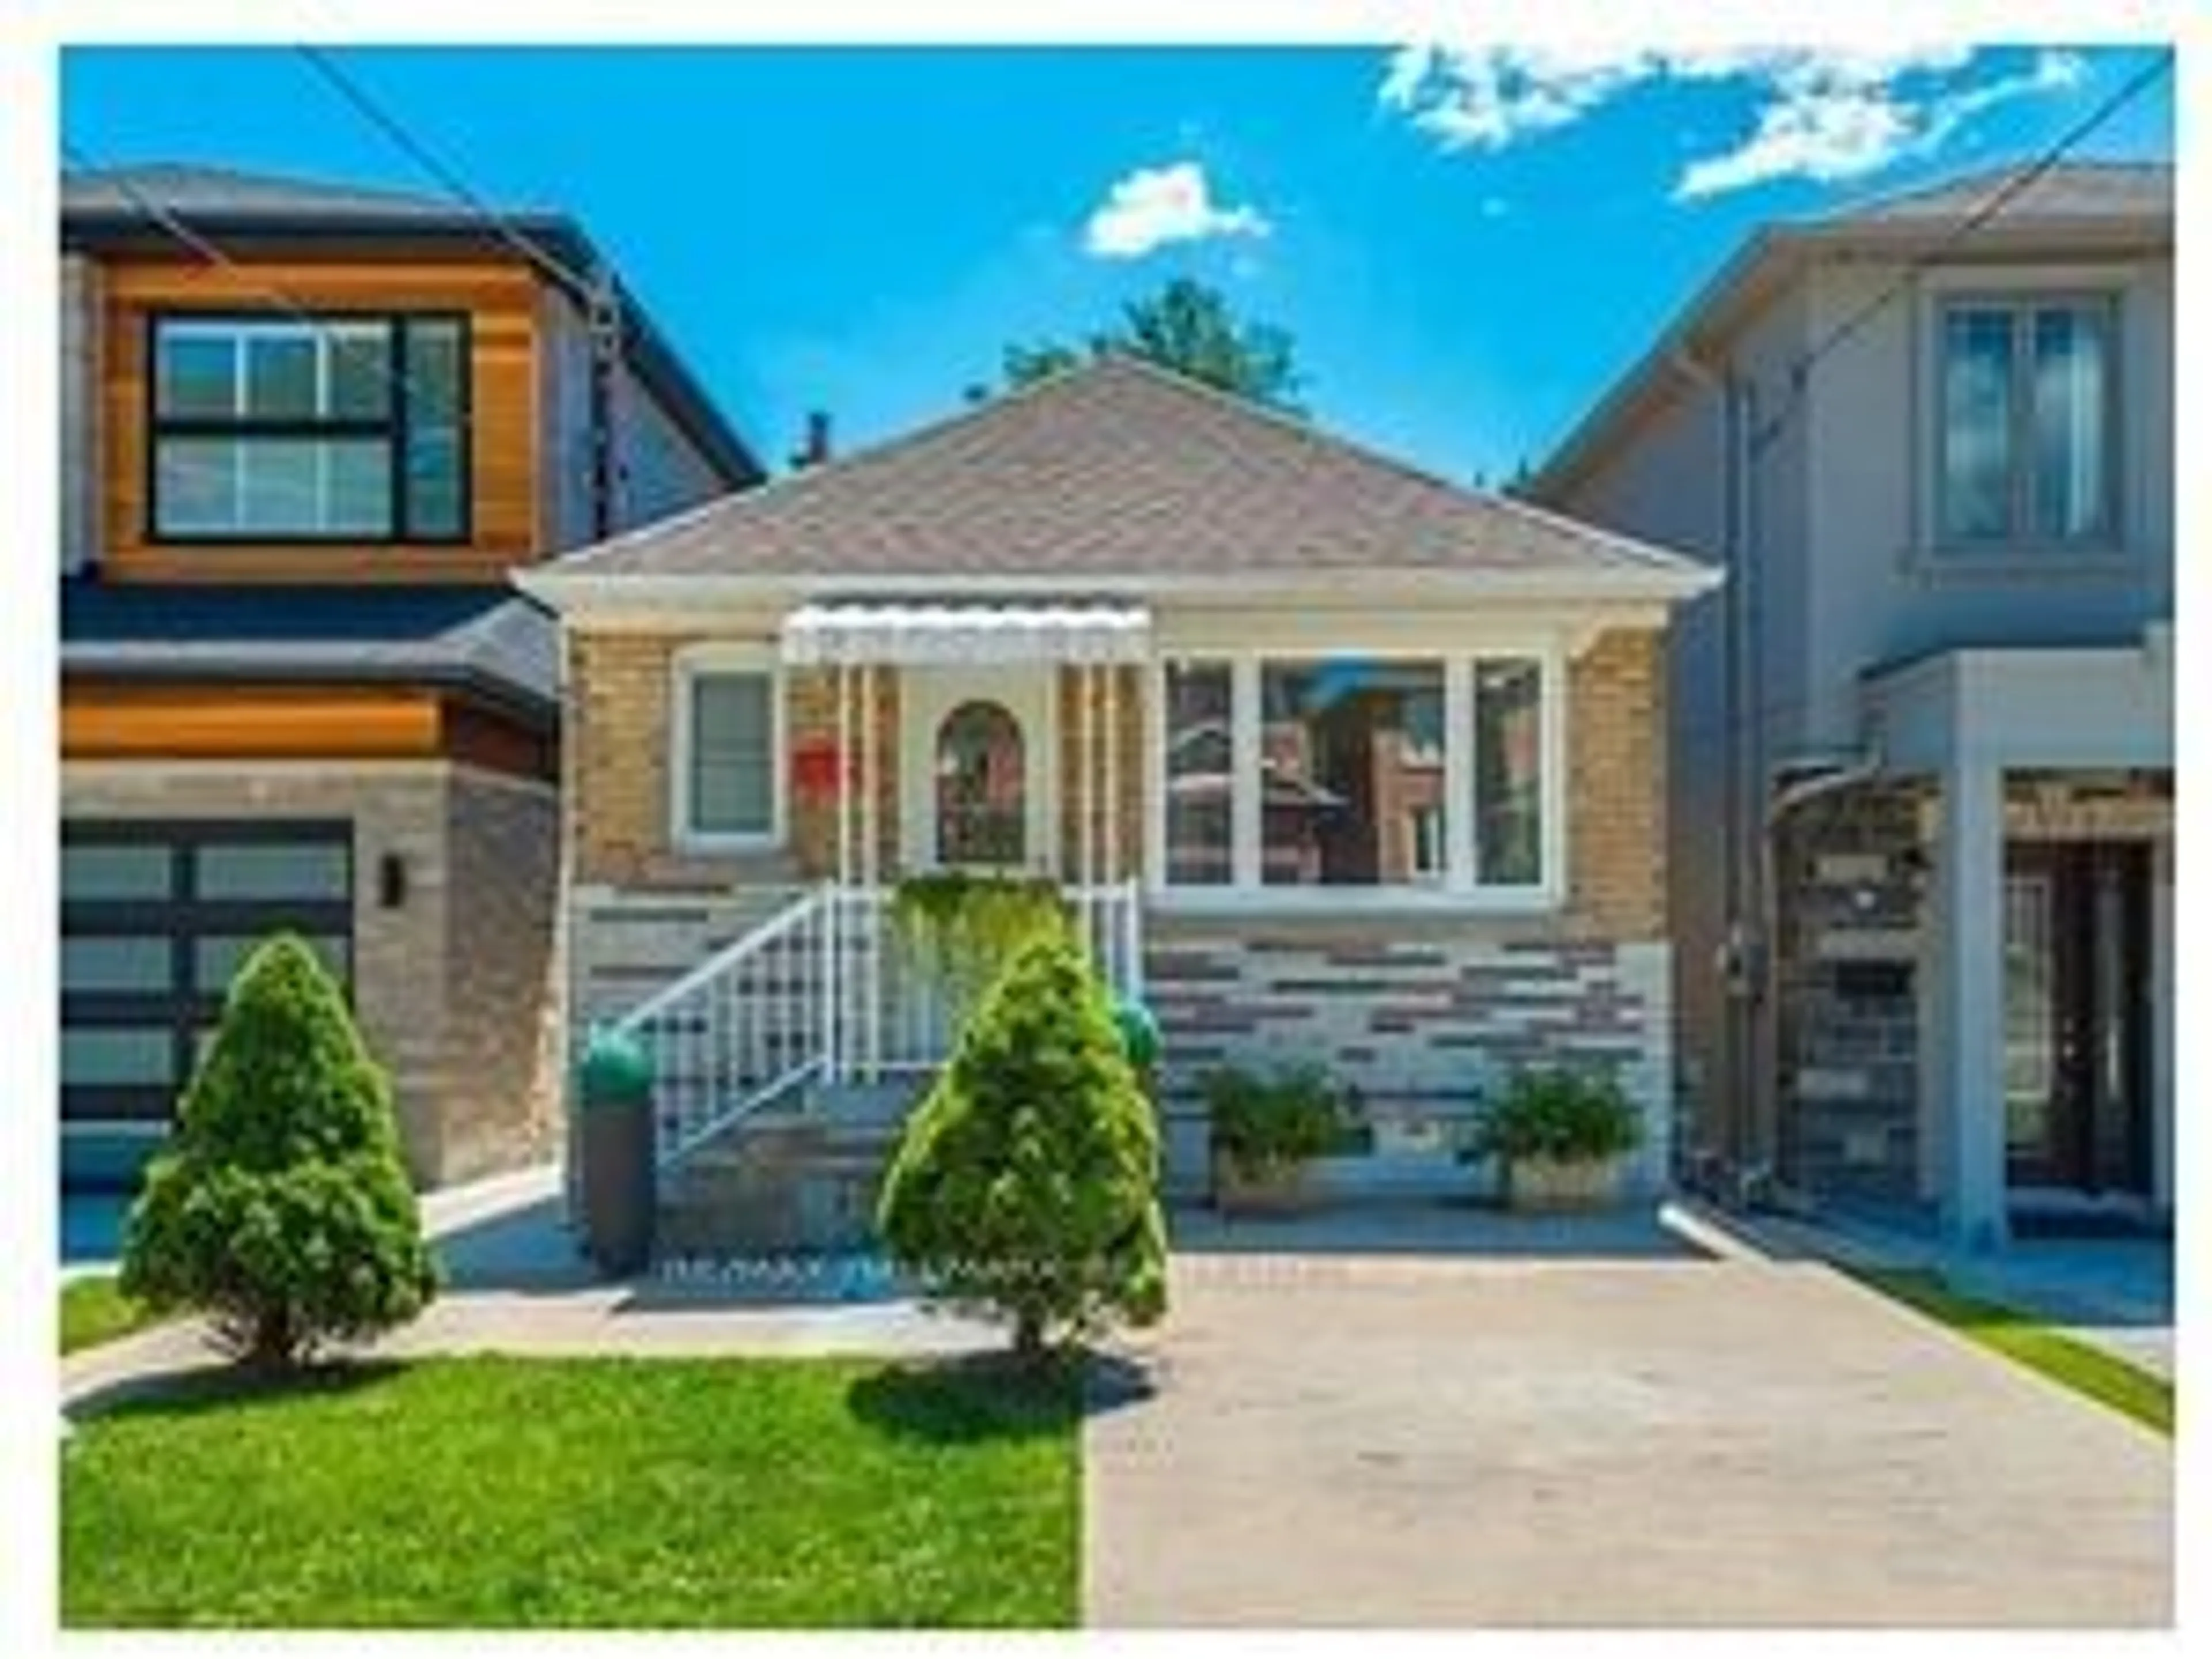 Home with brick exterior material for 11 Adair Rd, Toronto Ontario M4B 1V4